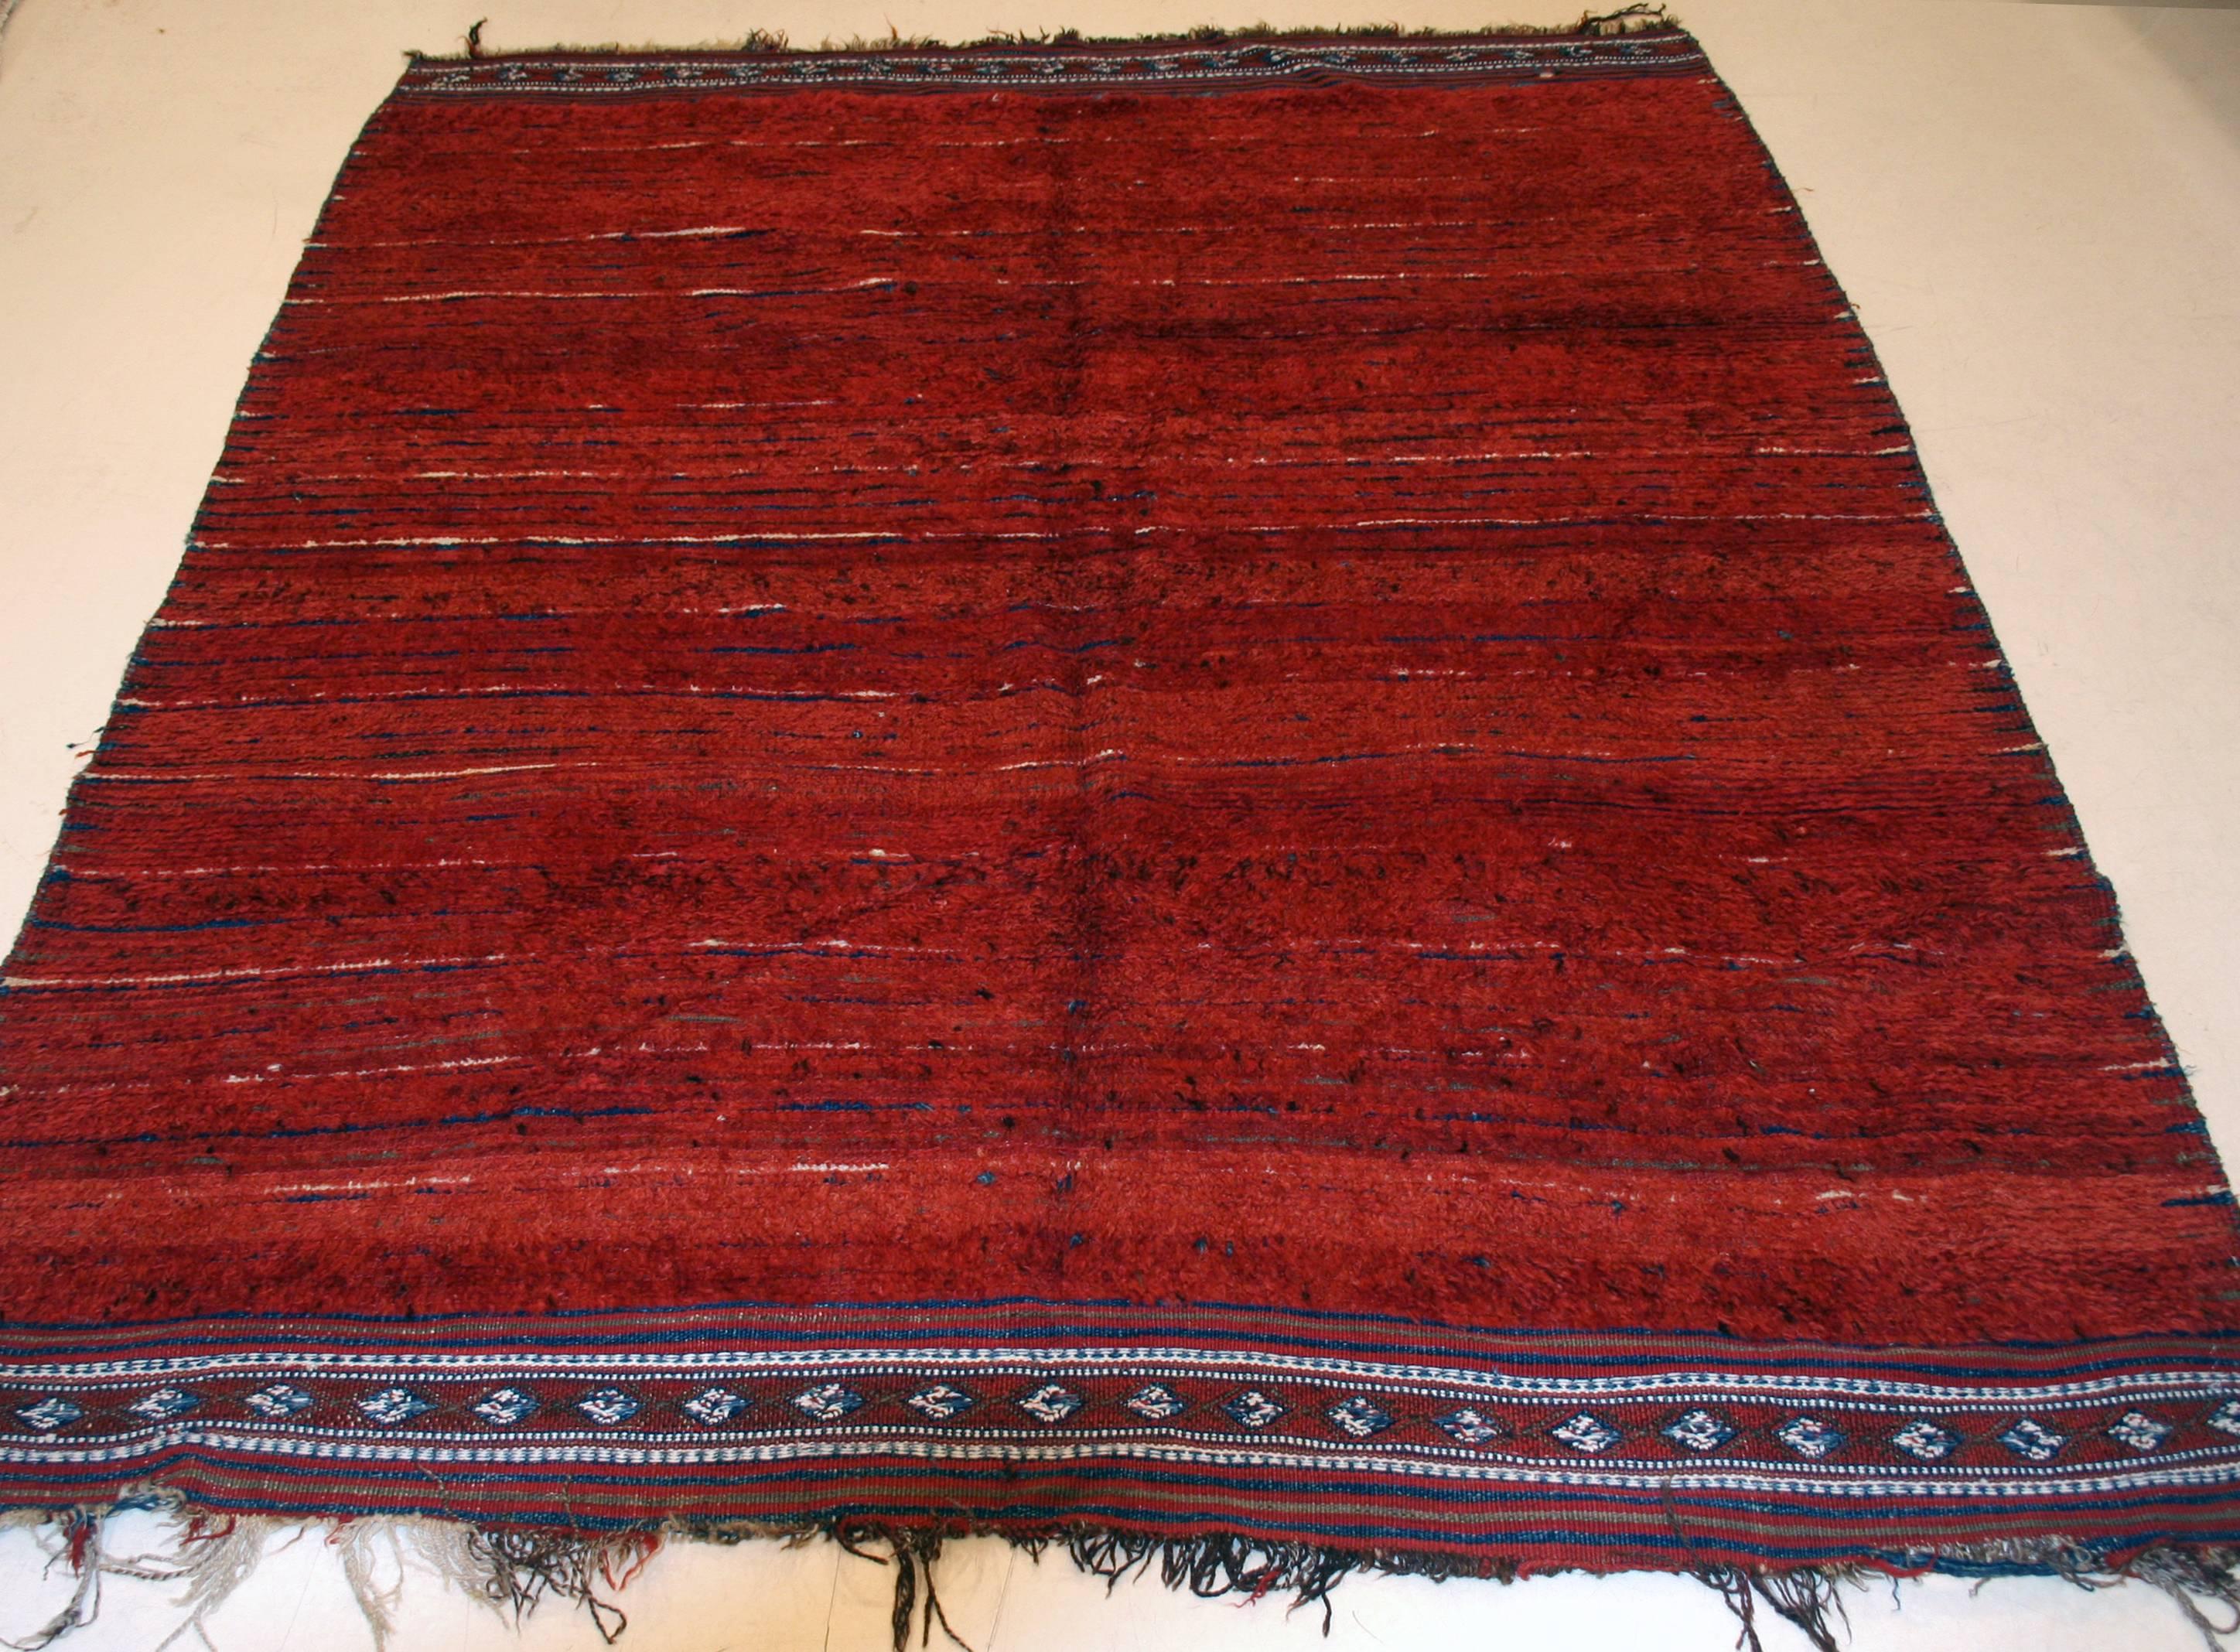 Ein sehr seltener und ungewöhnlicher usbekischer Teppich aus Zentralasien, der sich durch einen warmen und satten roten, offenen Hintergrund auszeichnet, eine natürliche Farbe, die aus der Krapppflanze gewonnen wird. Dieser Hintergrund wird durch